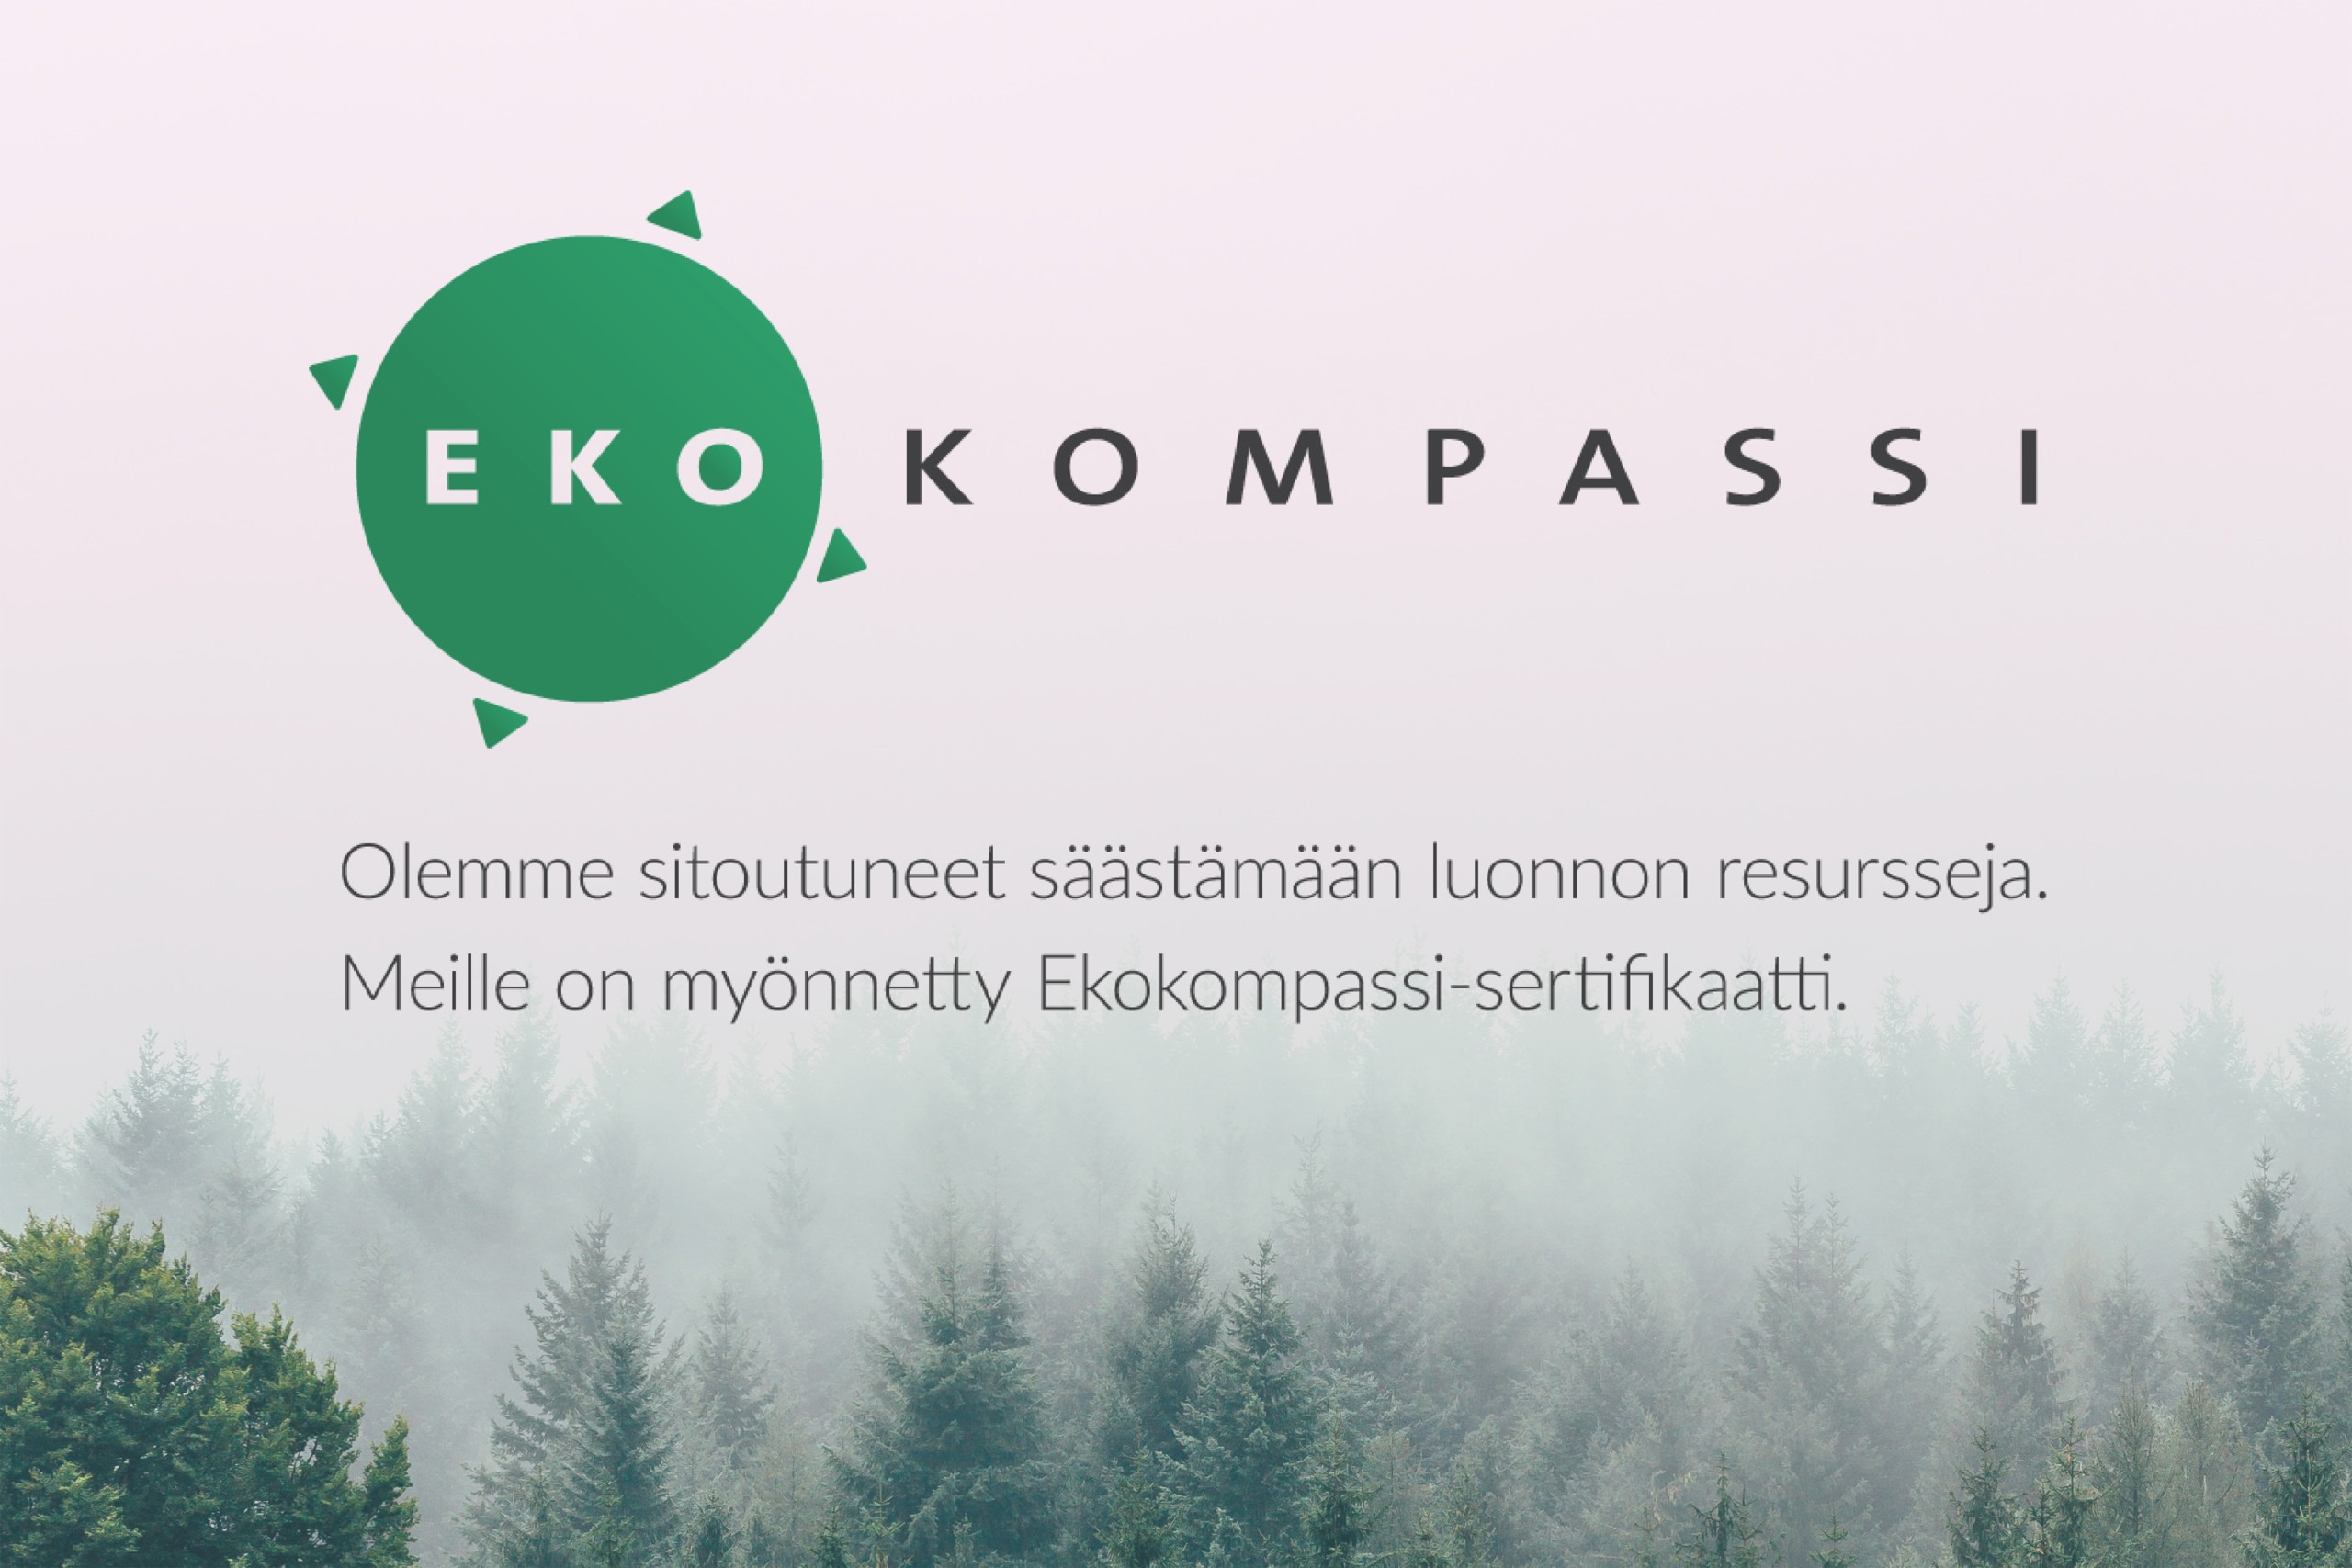 Rune & Berg Designille on myönnetty Ekokompassi-sertifikaatti.